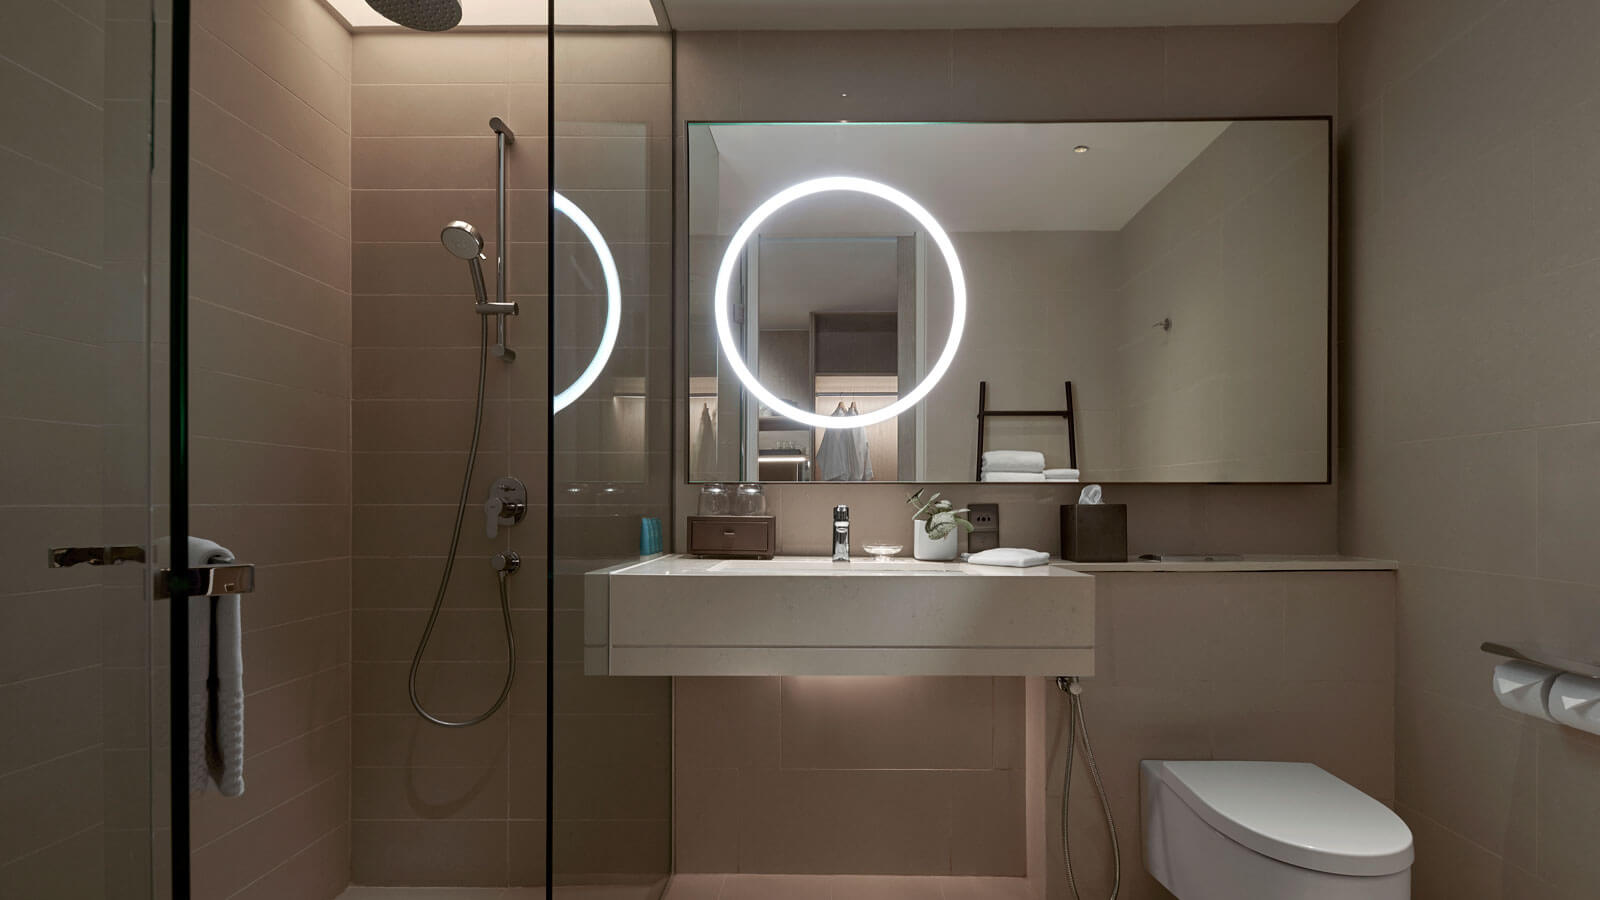 Bathroom in Deluxe Room - 吉隆坡阿瑪瑞酒店